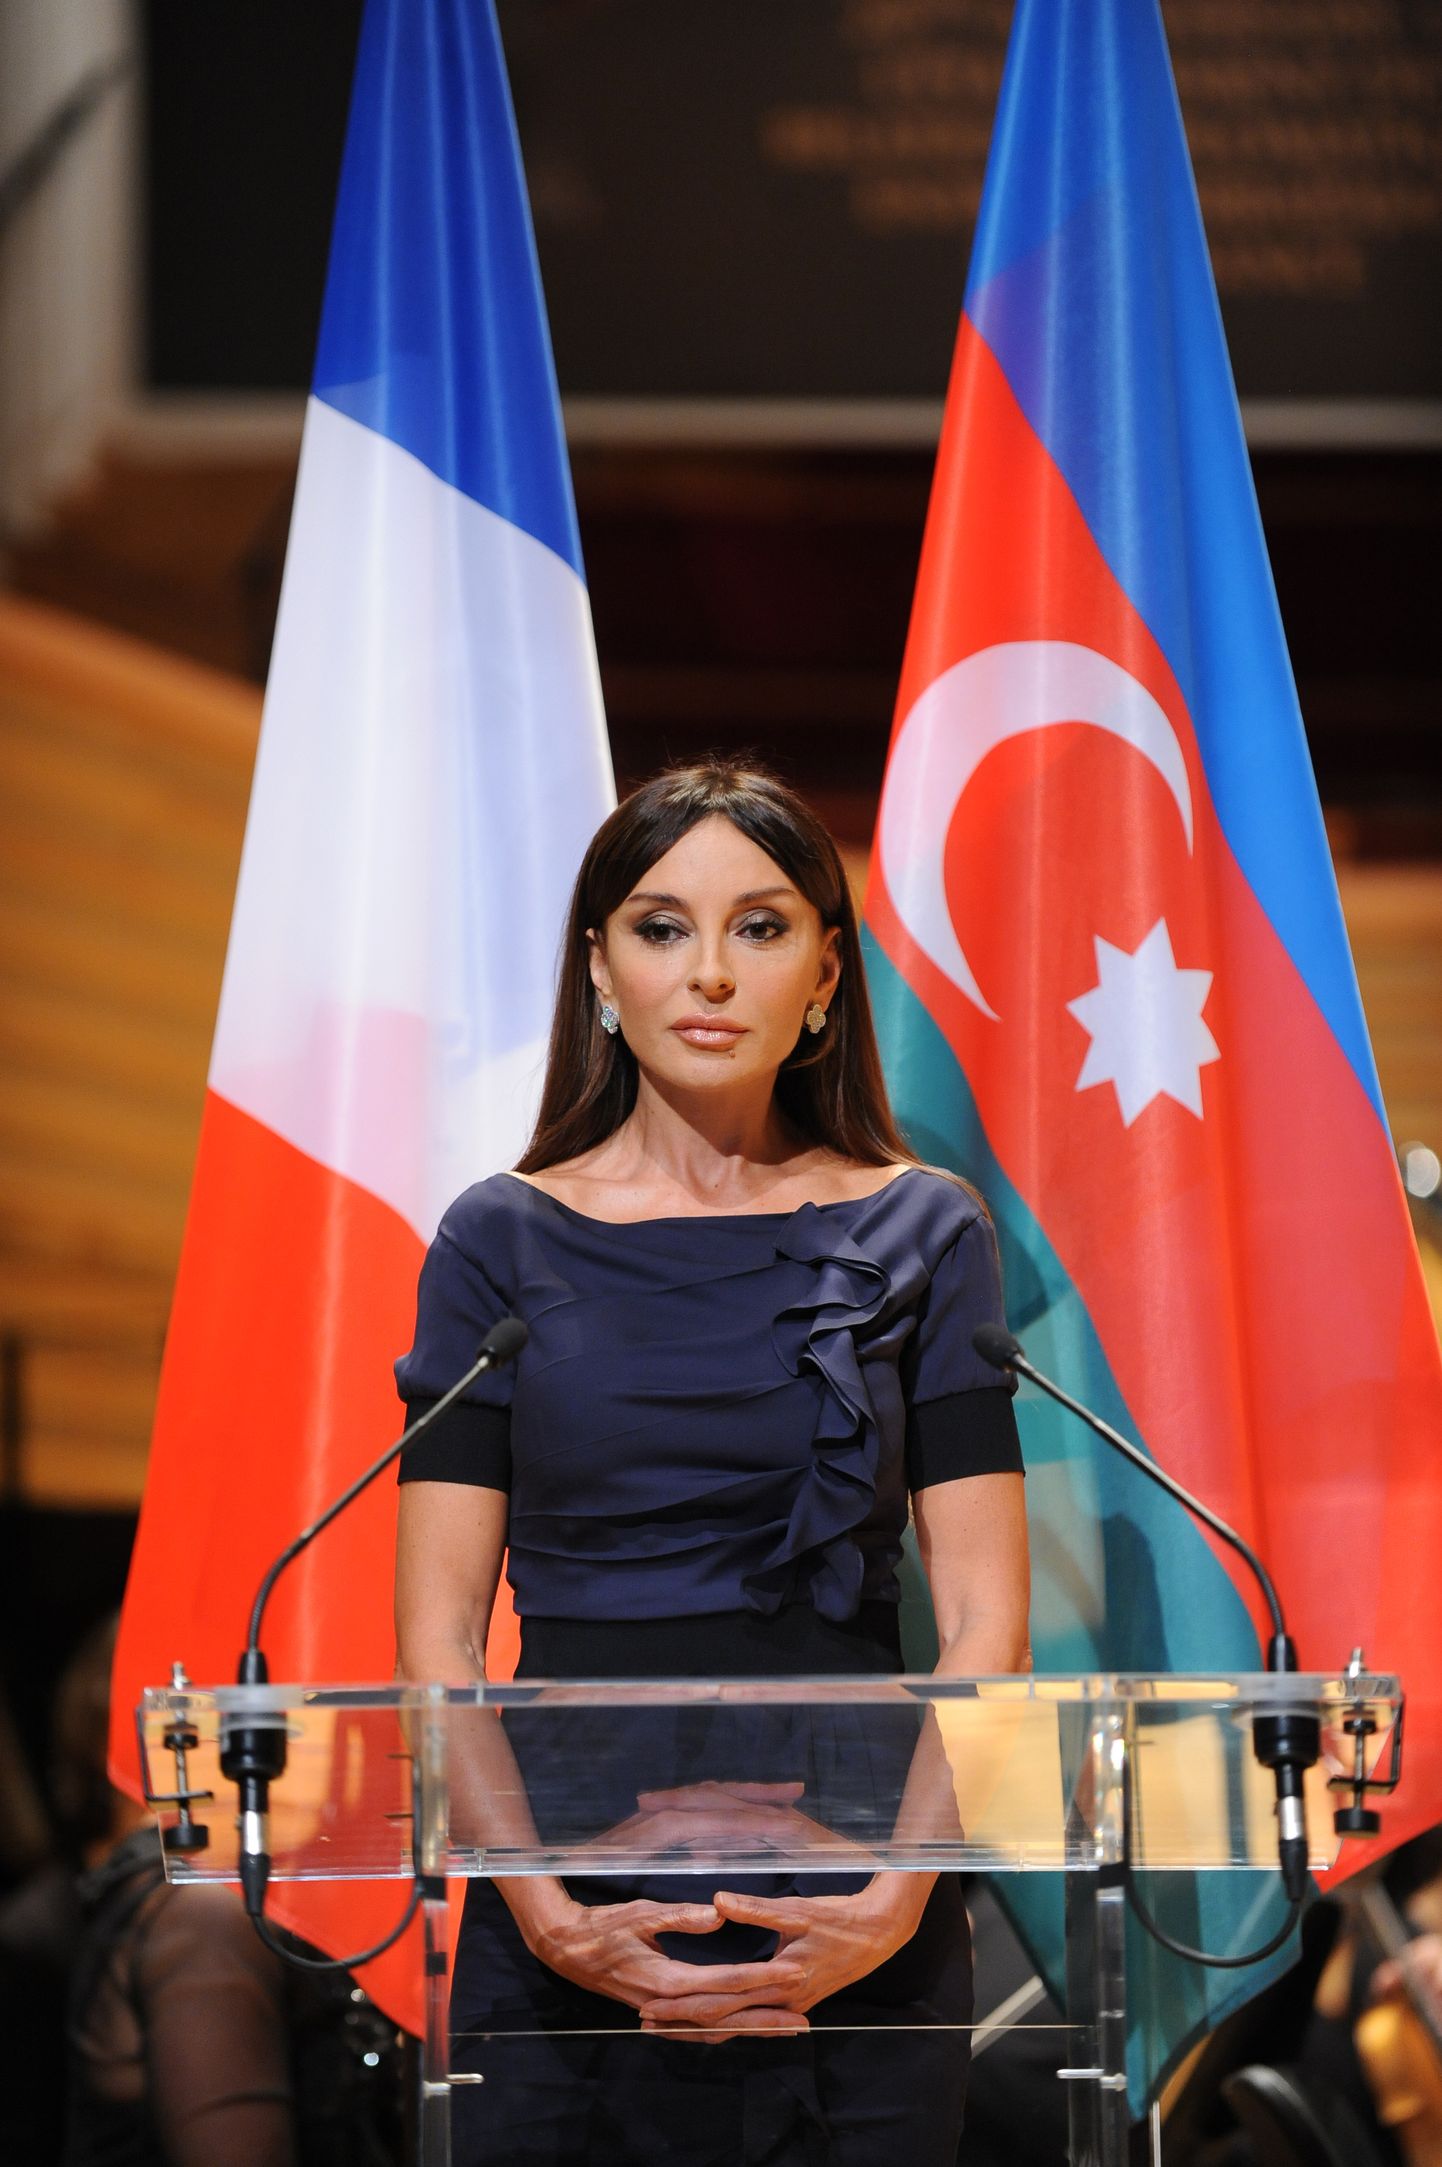 HEA KARJÄÄR: Kaukaasia üks edukamaid naisi on kindlasti Aserbaidžaani esimene leedi ja asepresident Mehriban Aliyeva. Pilt on tehtud kaheksa aastat tagasi ametliku visiidi ajal Pariisi.